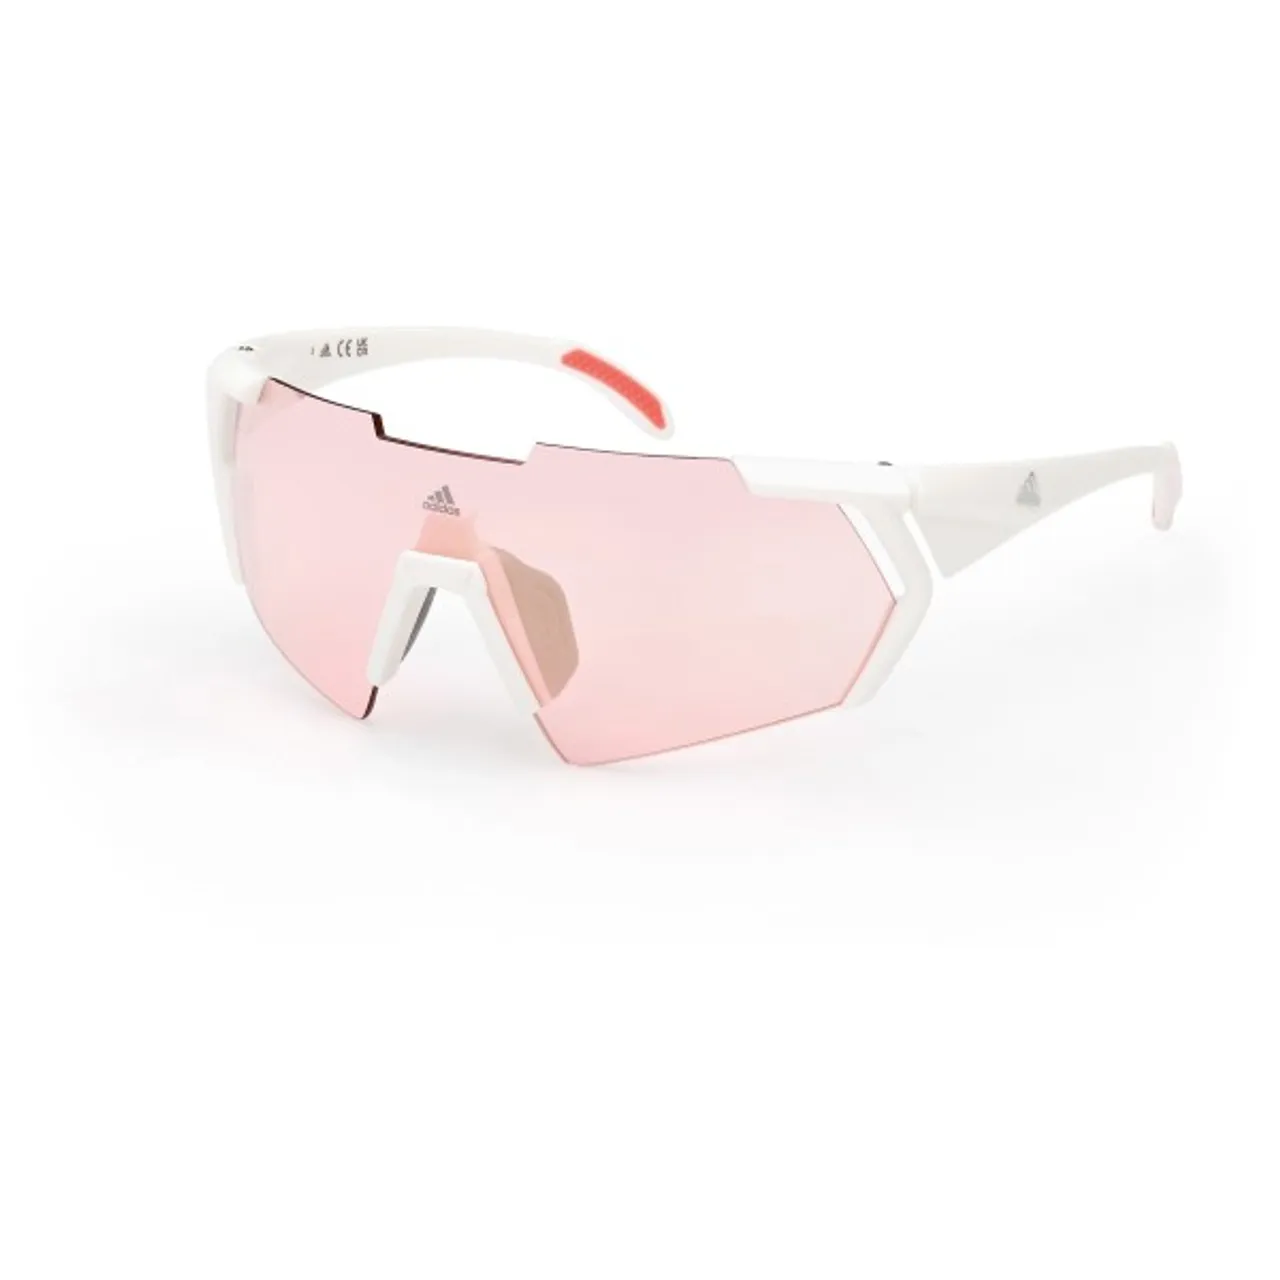 adidas eyewear - SP0064 Mirror Cat. 1 - Fahrradbrille weiß